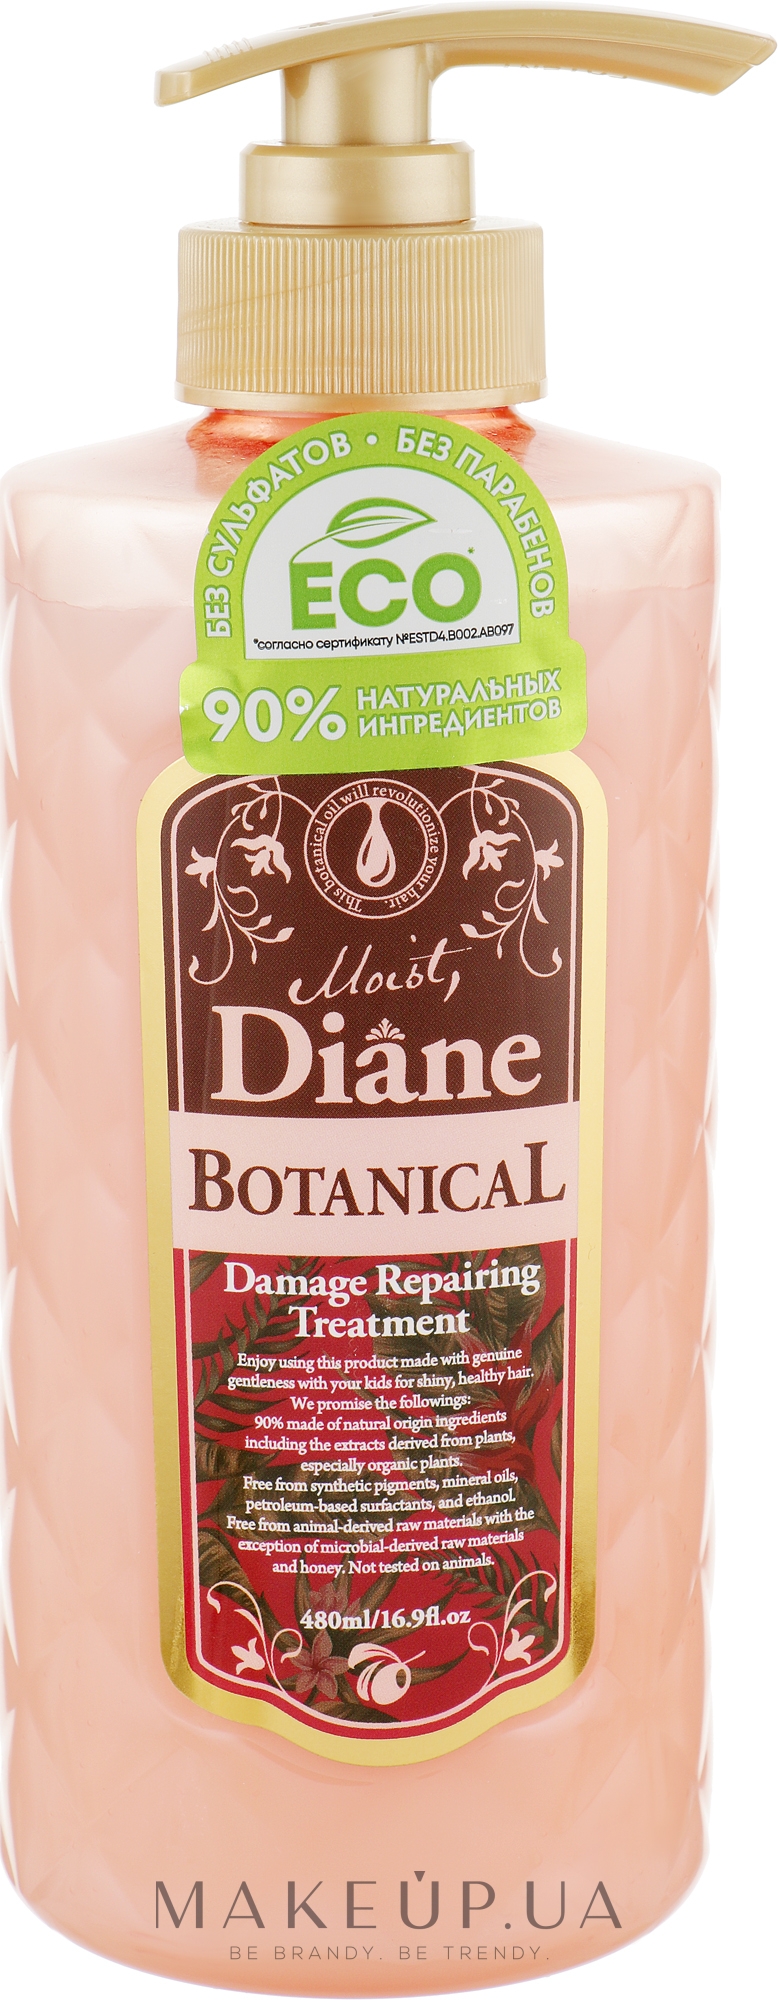 Бальзам-кондиционер для волос "Восстановление" - Moist Diane Botanical Damage Repairing Treatment — фото 480ml